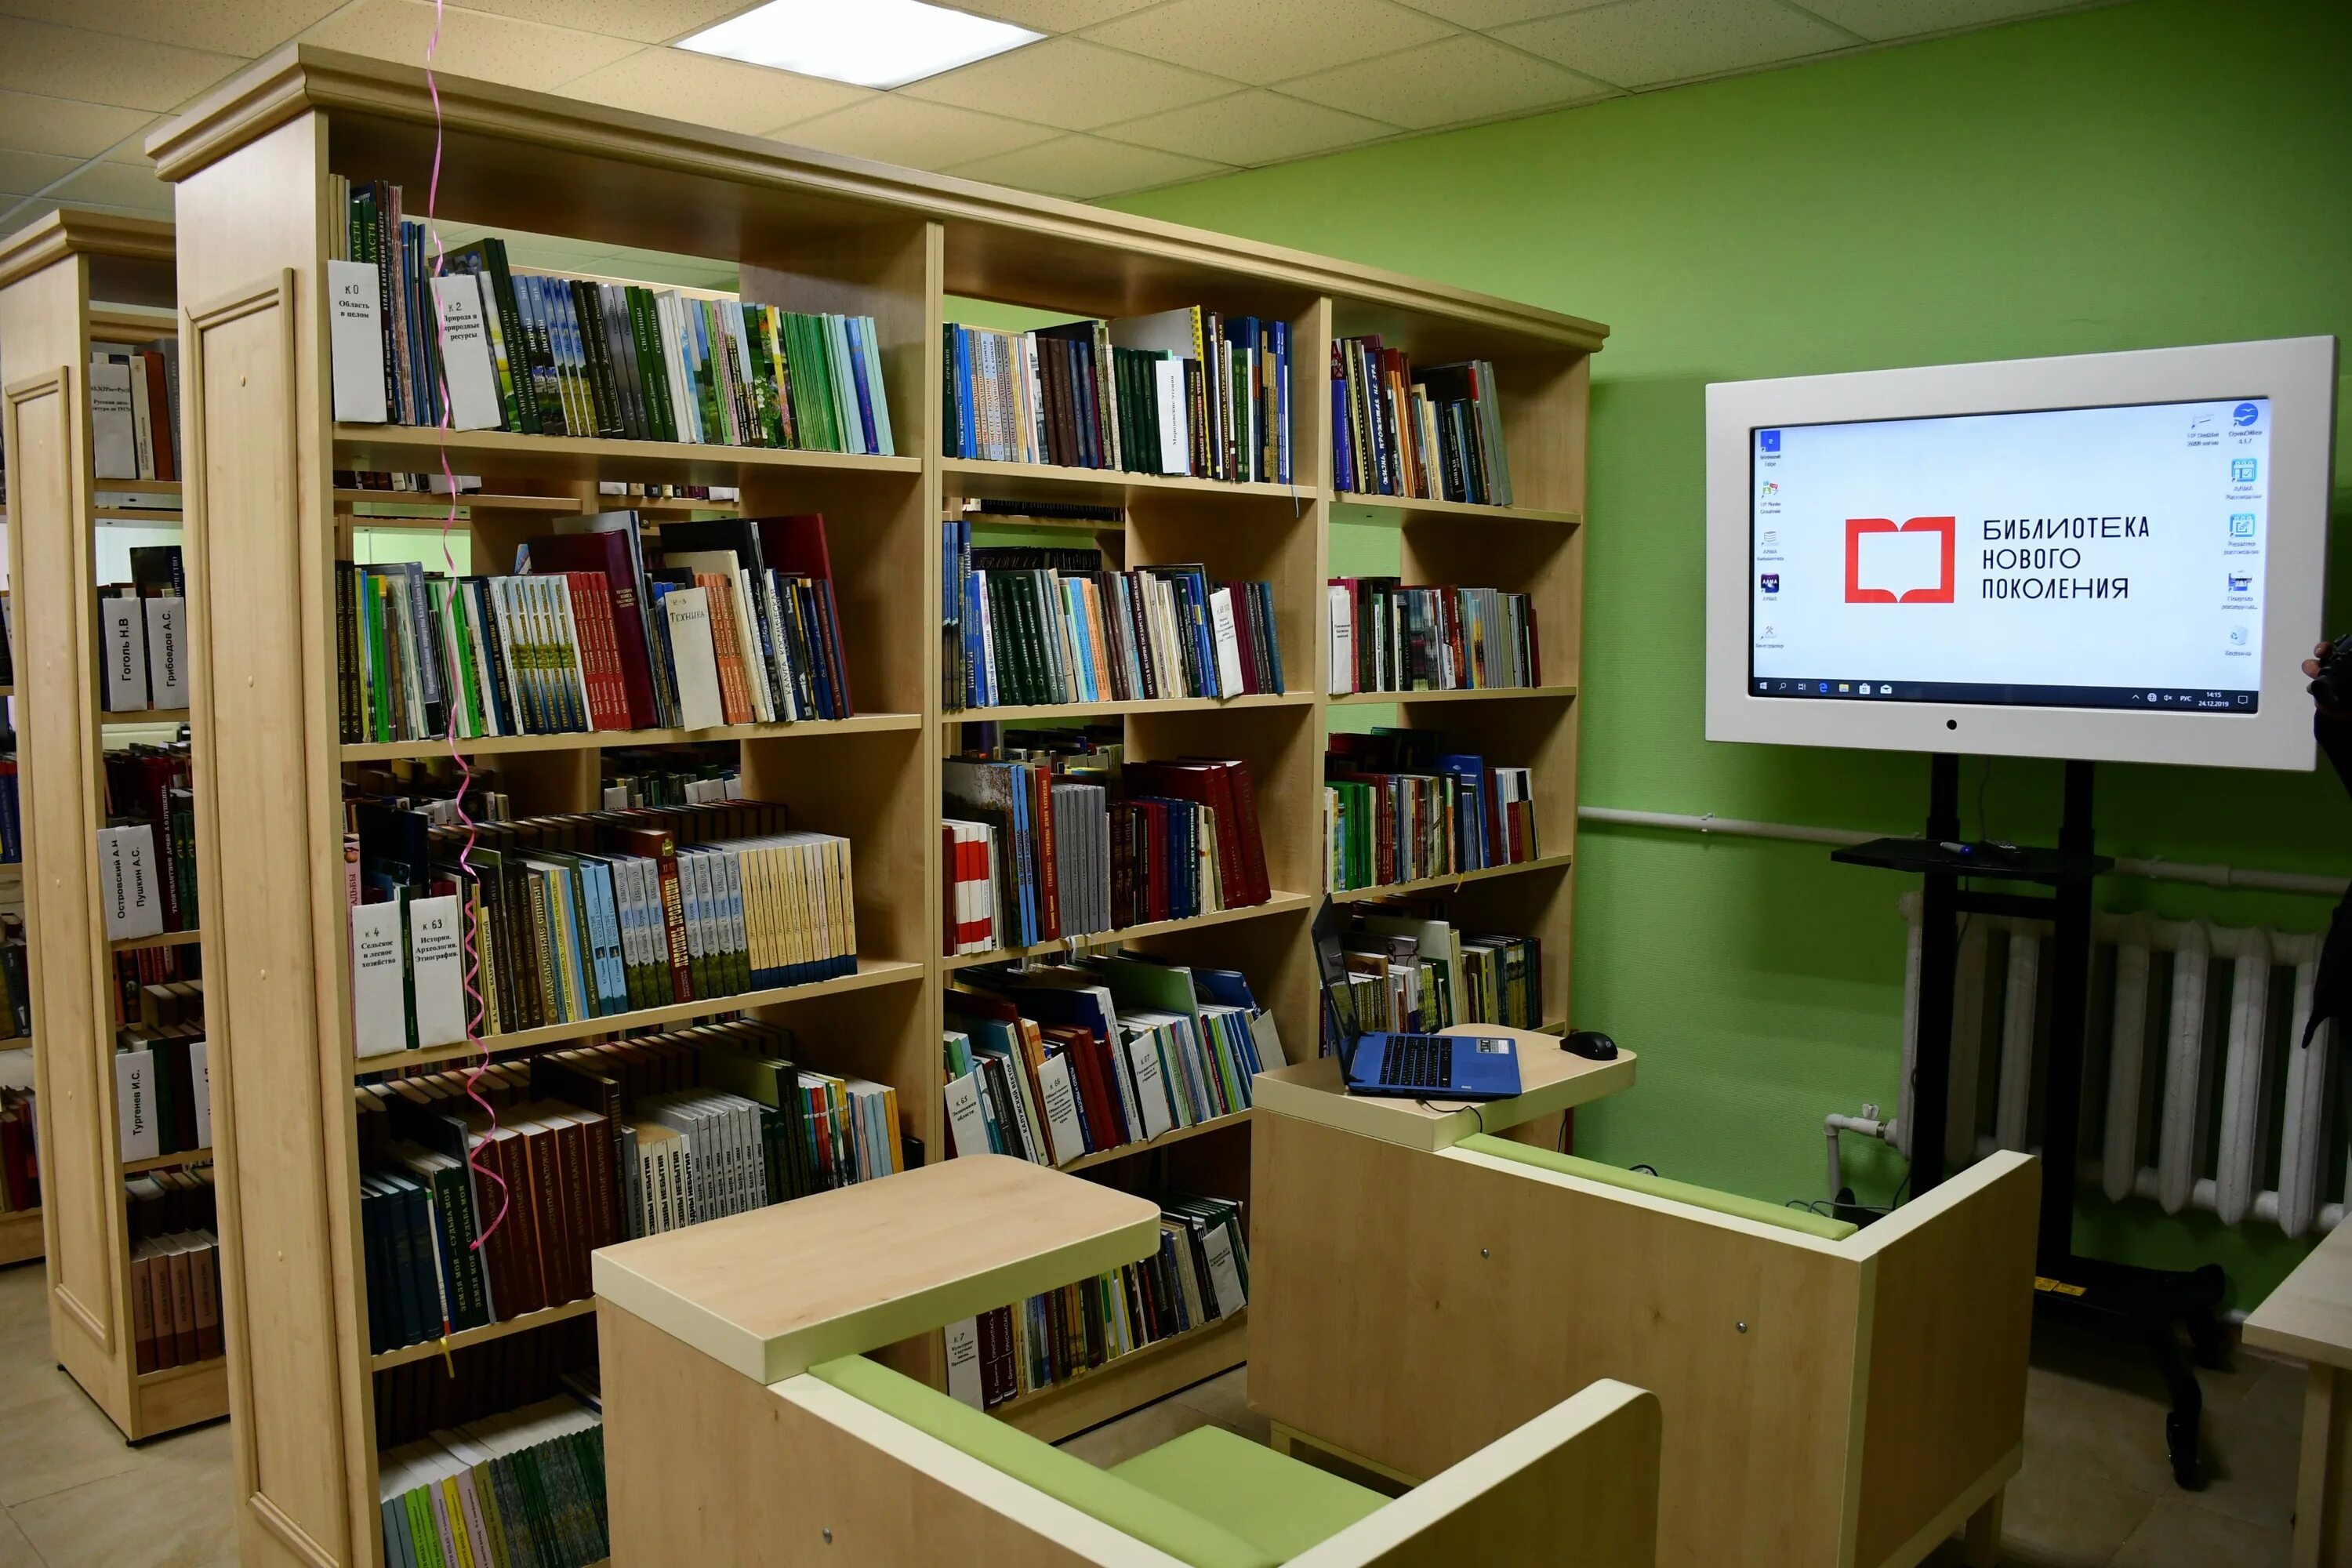 Библиотека новая россия. Модельная библиотека. Библиотека нового поколения. Муниципальная библиотека. Современная Российская библиотека.